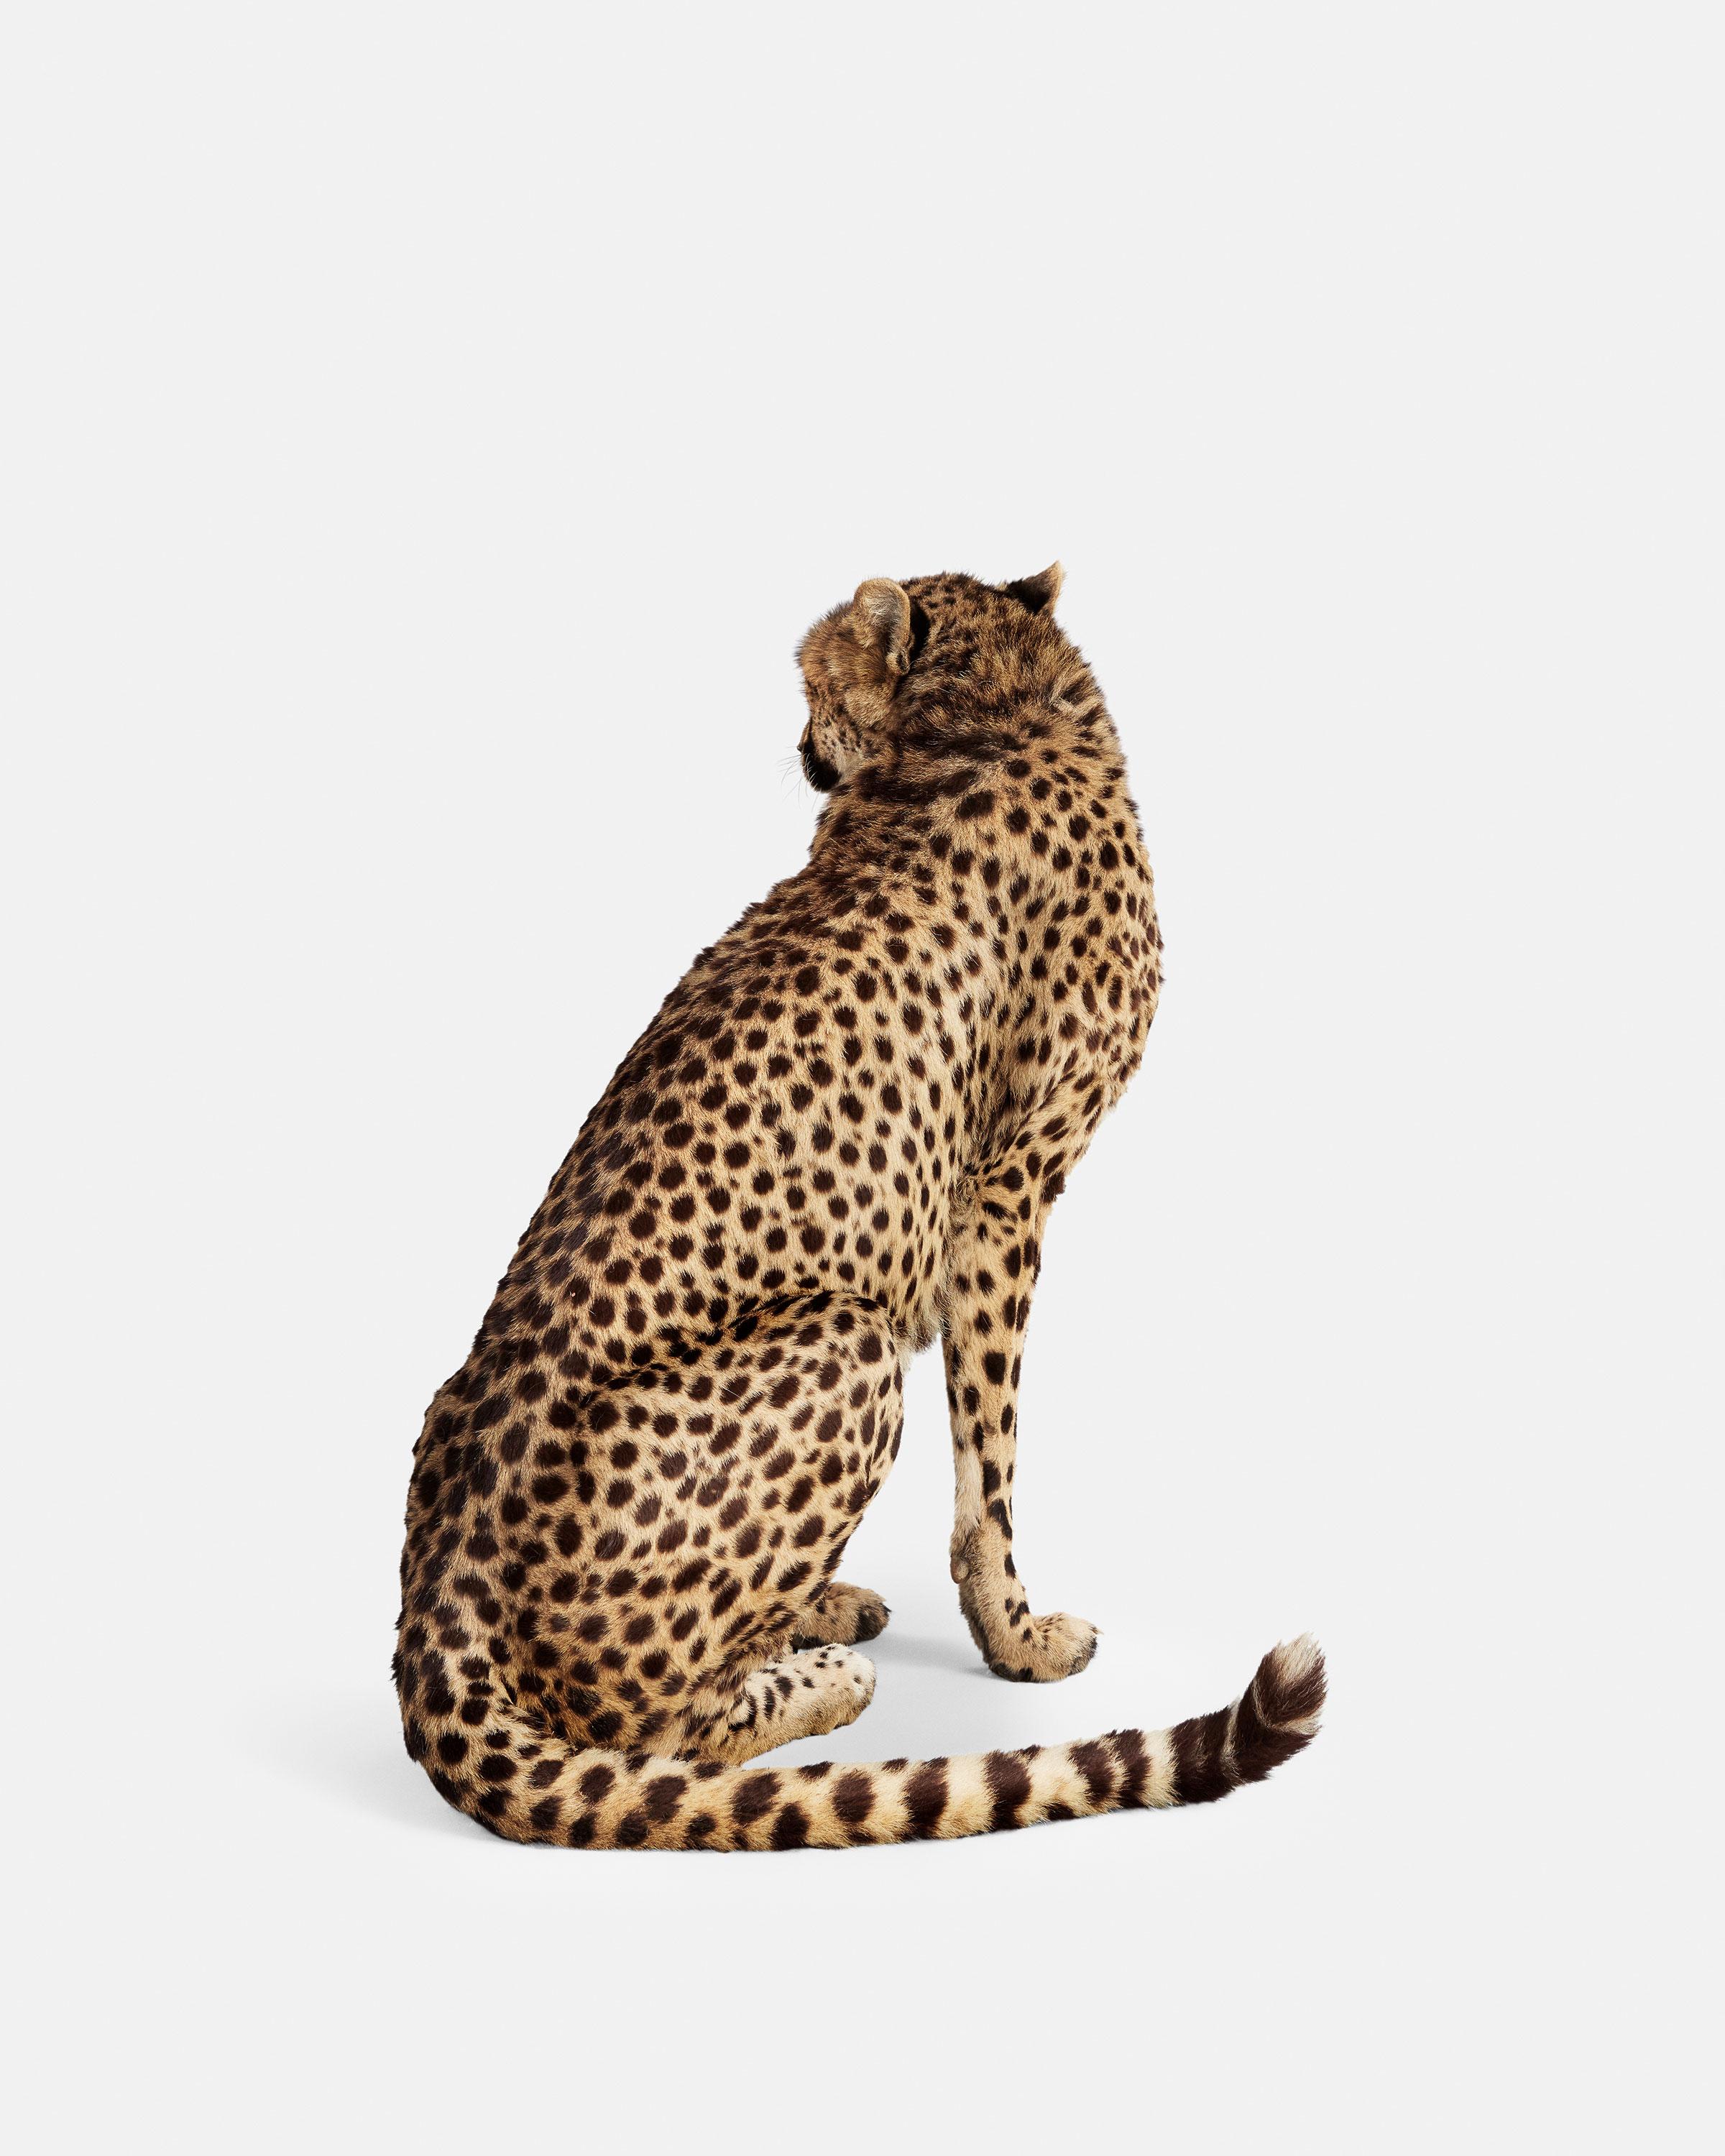 Randal Ford Color Photograph - Cheetah No. 2 (50" x 40")